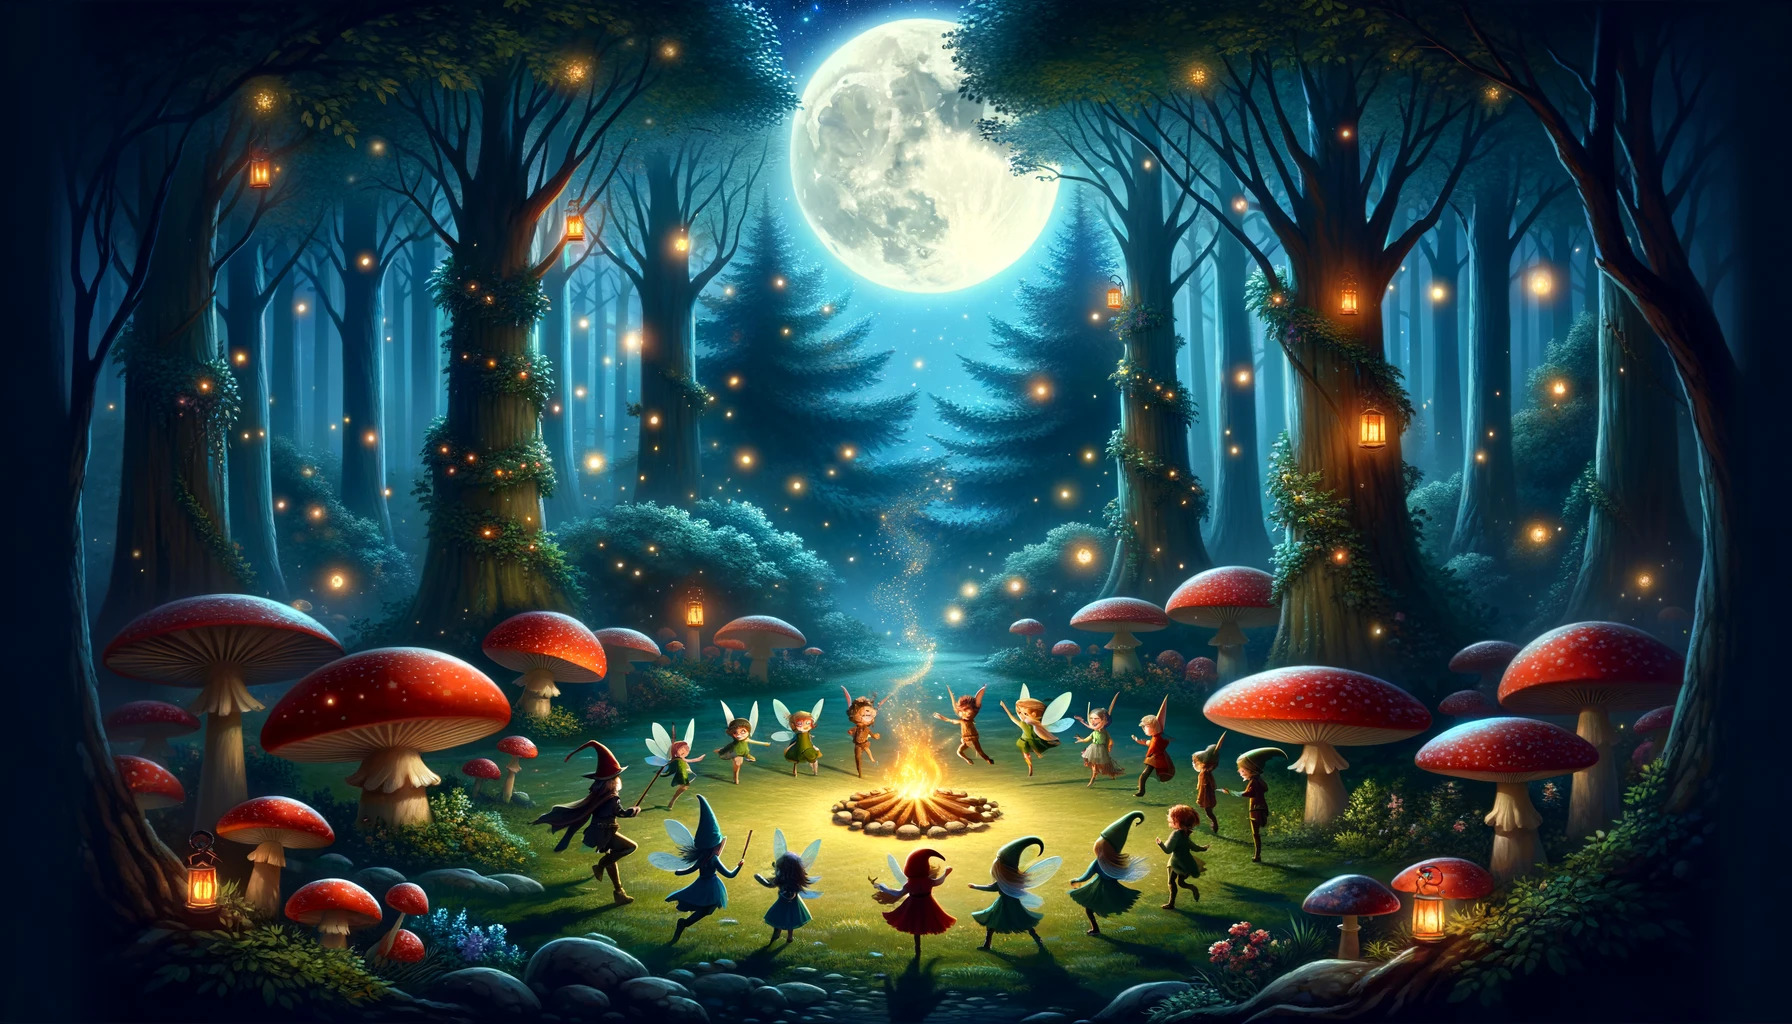 Una escena nocturna en un bosque mágico, iluminado por la luna llena